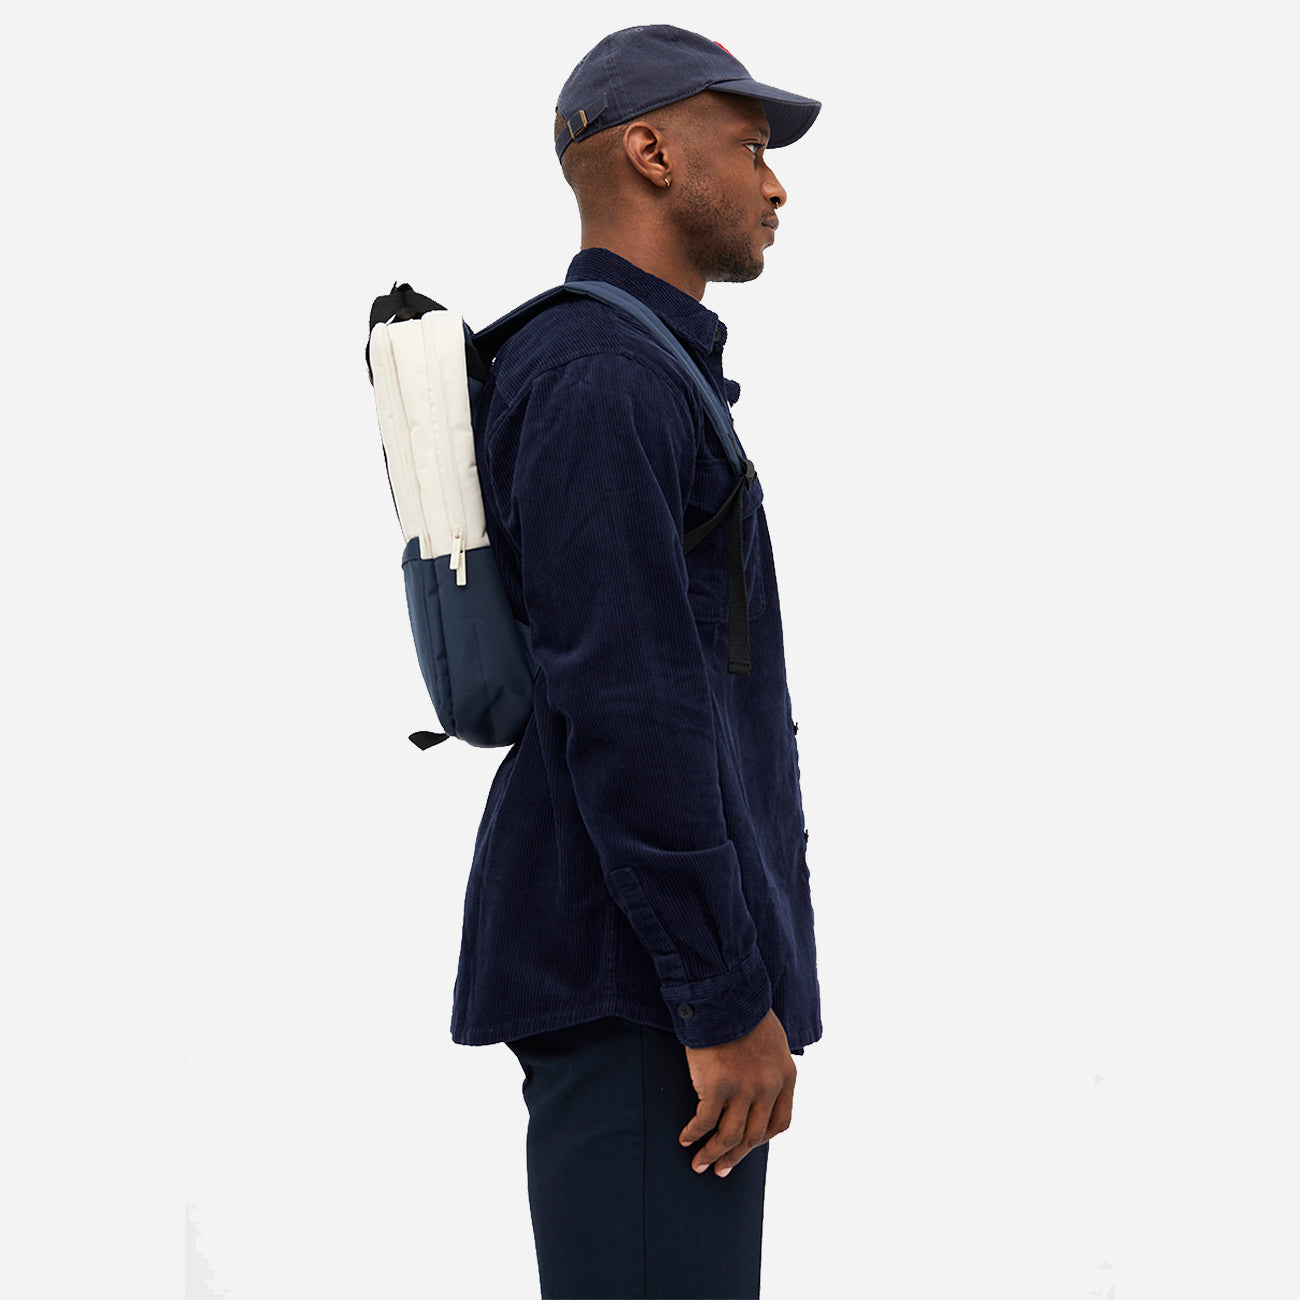 Homme avec un sac à dos urbain durable bleu et blanc, vue de côté